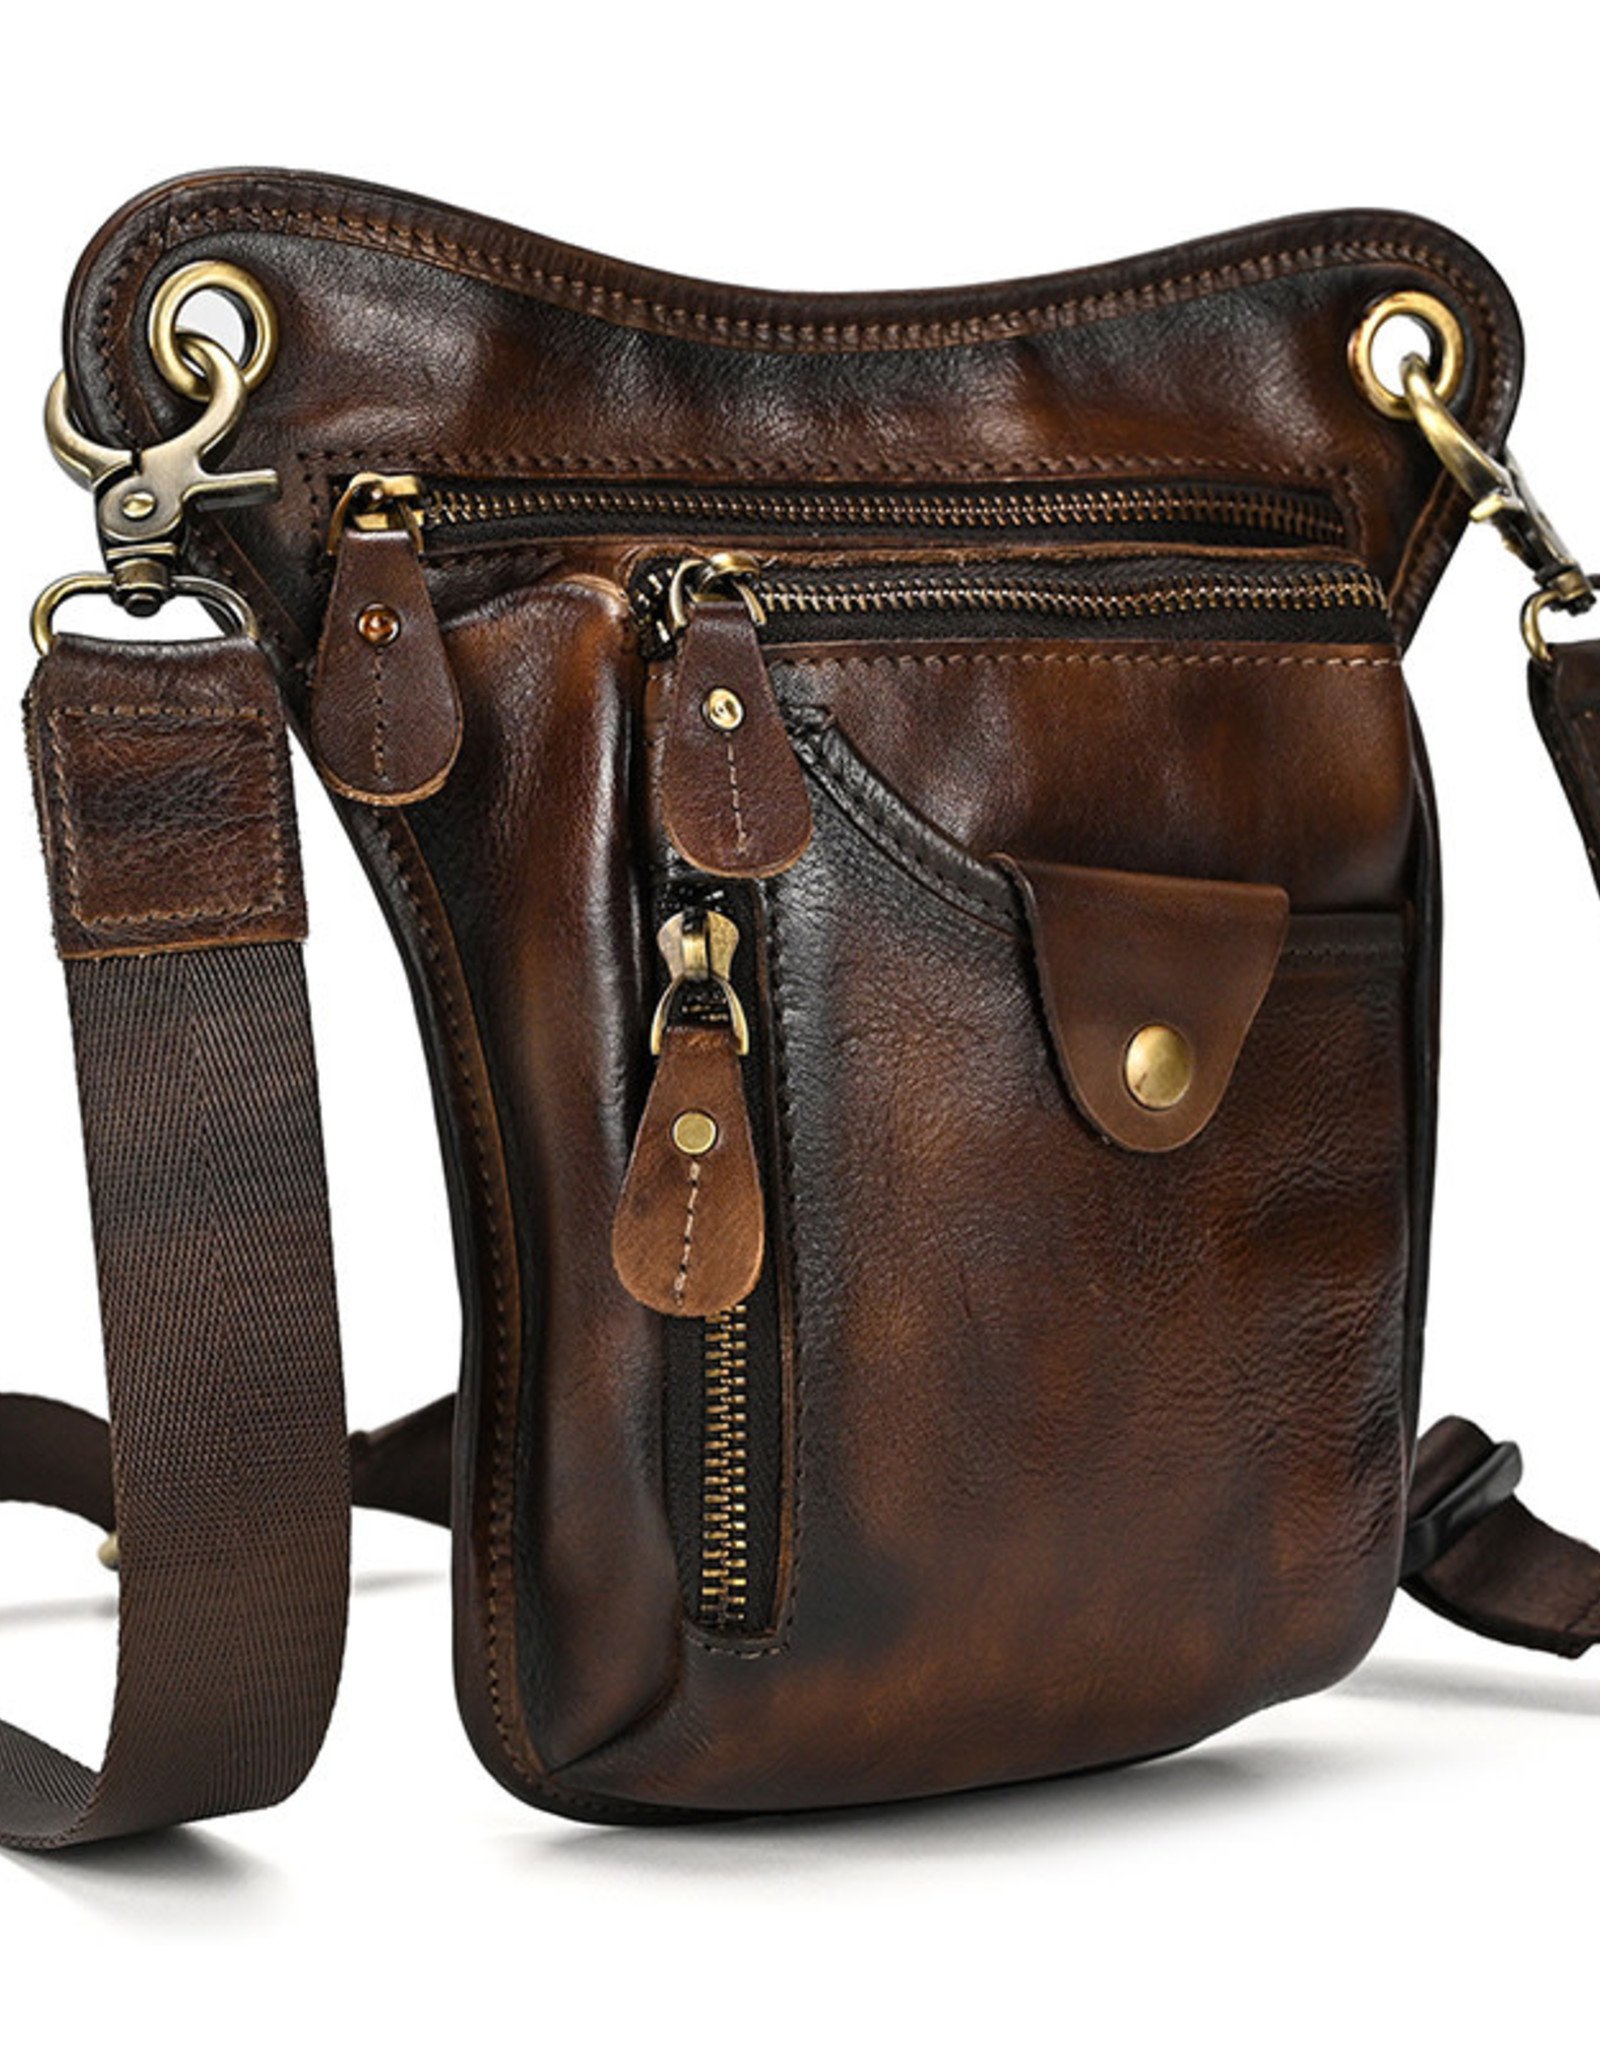 Austin Waist & Shoulder Bag Genuine Leather